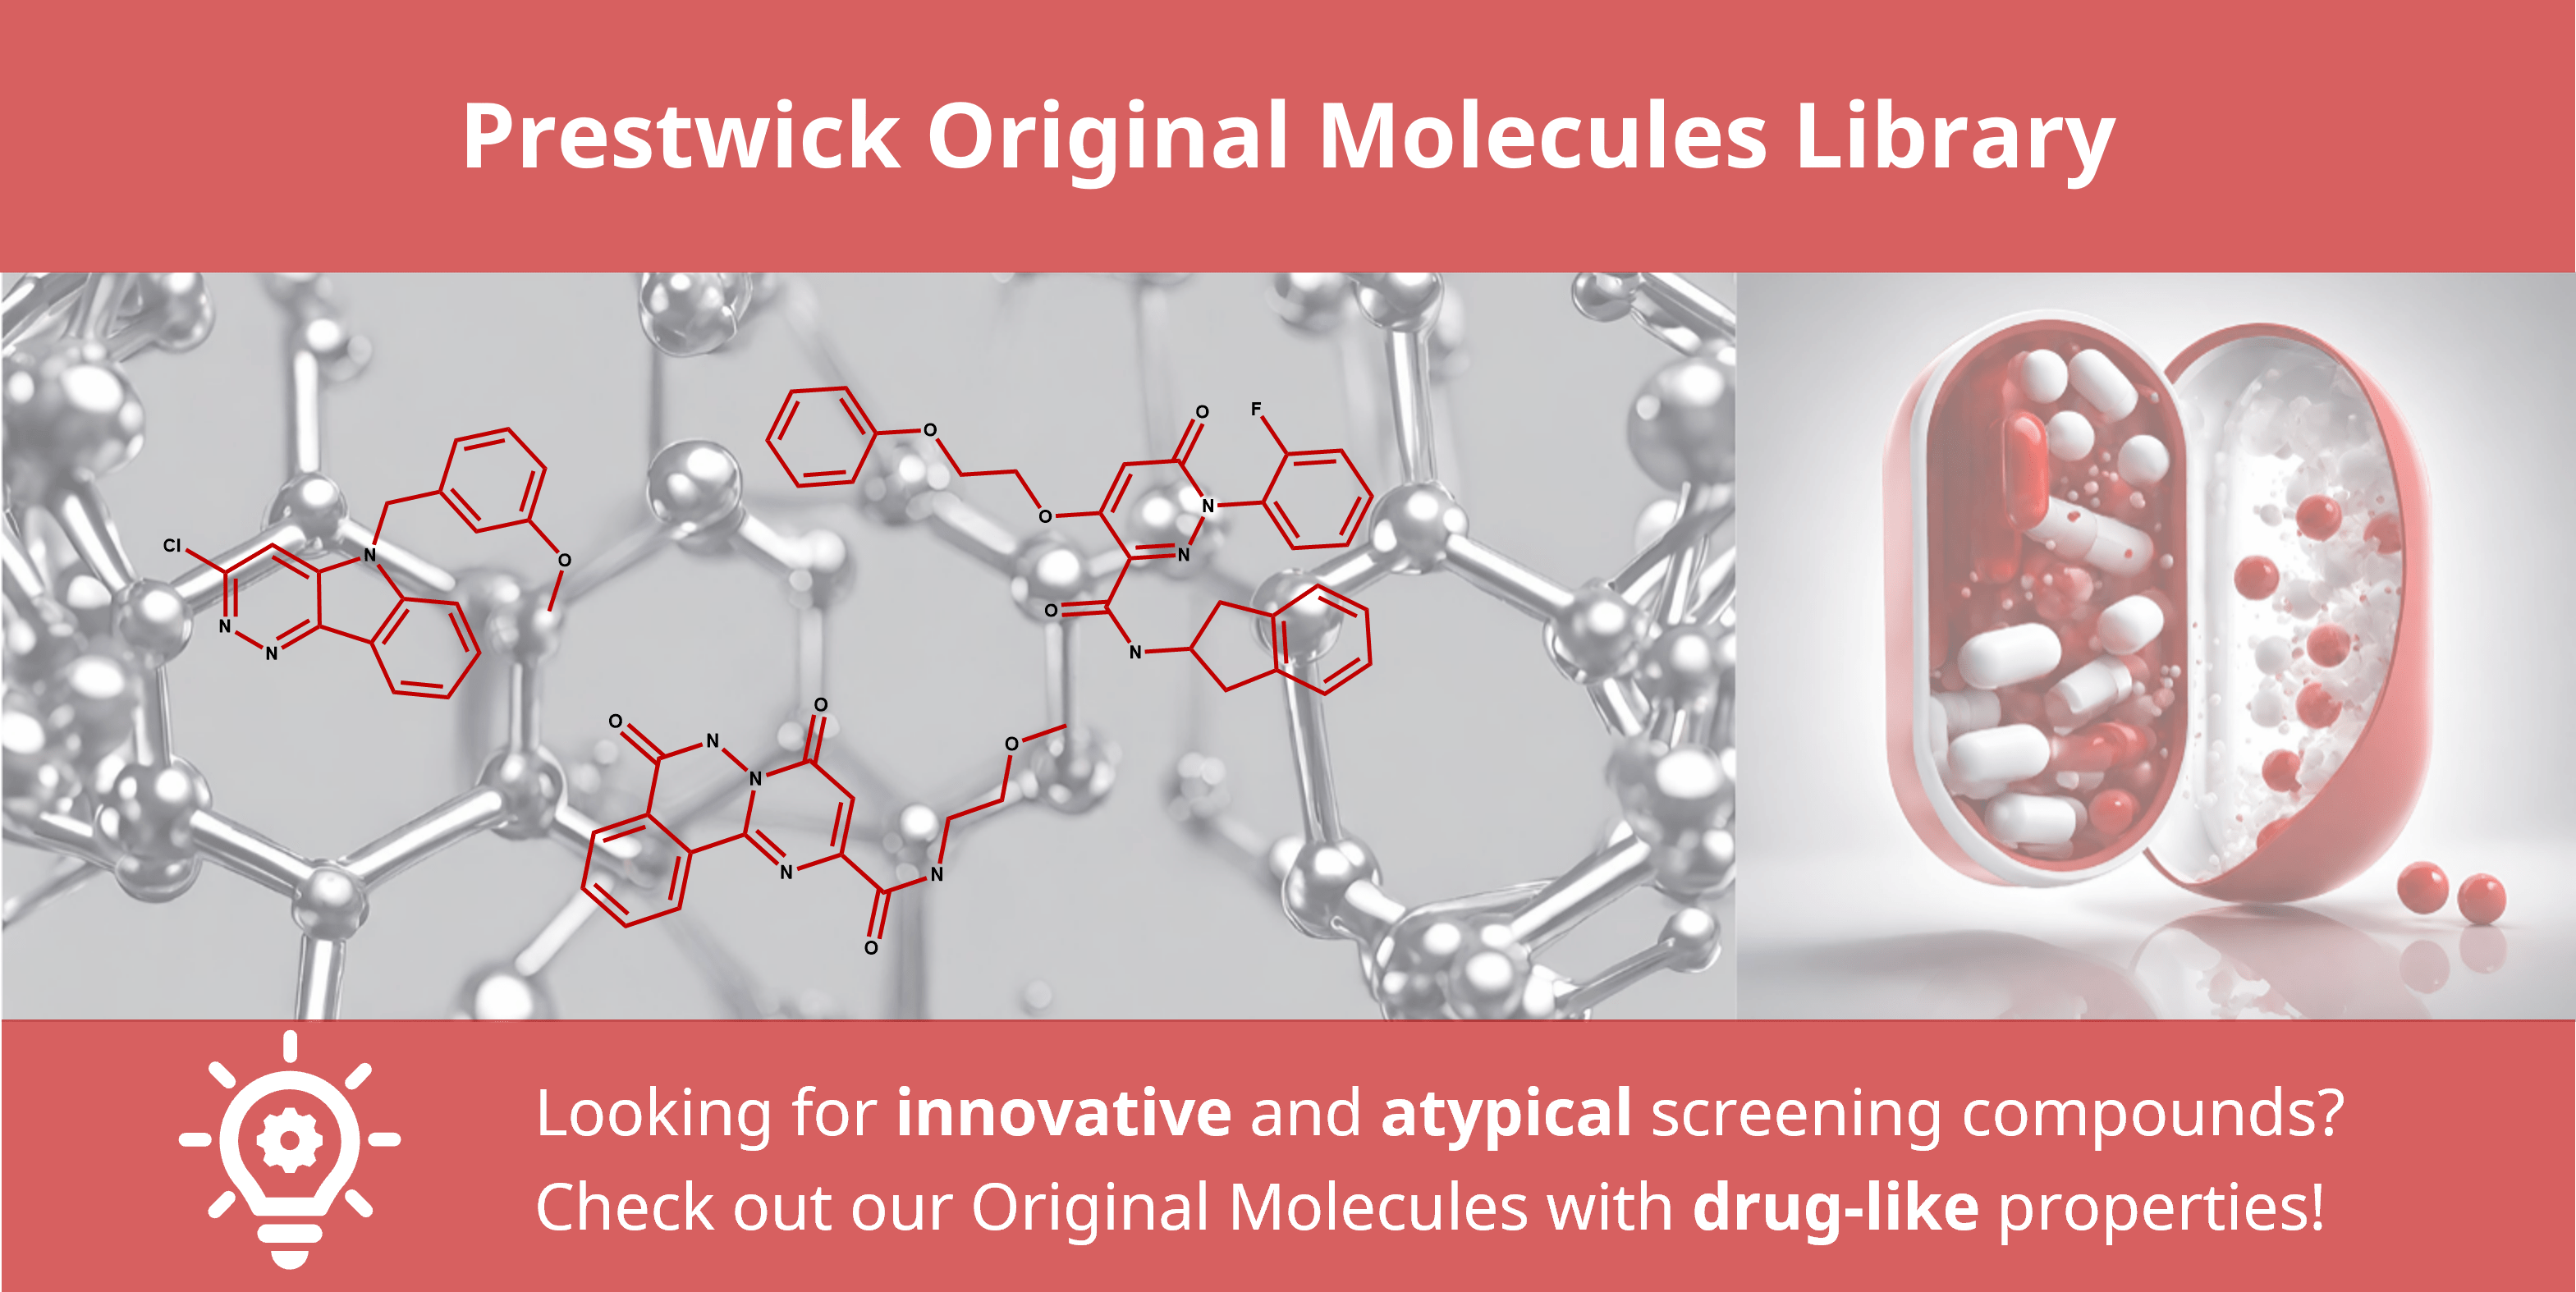 Prestwick Original Molecules Library